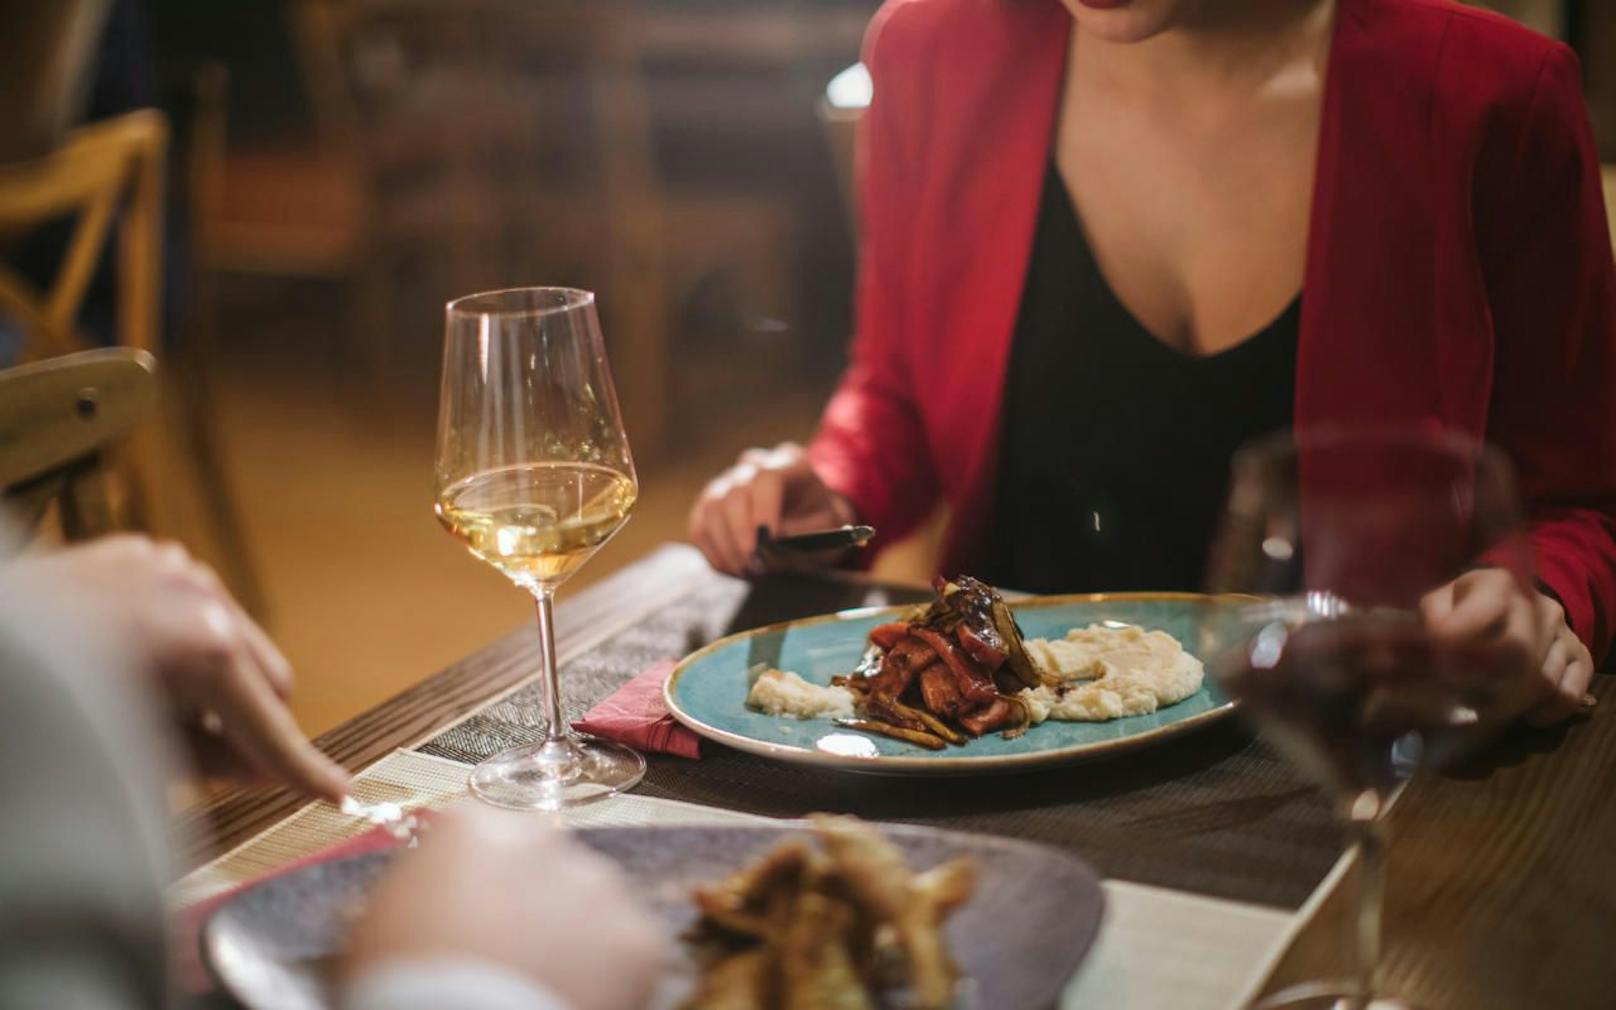 Ein romantisches Ambiente beim Abendessen kann teilweise einen begrenzten, jäh unterbrochenen Zeitraum haben. Die Gastronomen haben gute Gründe für ihre Time Slots. 